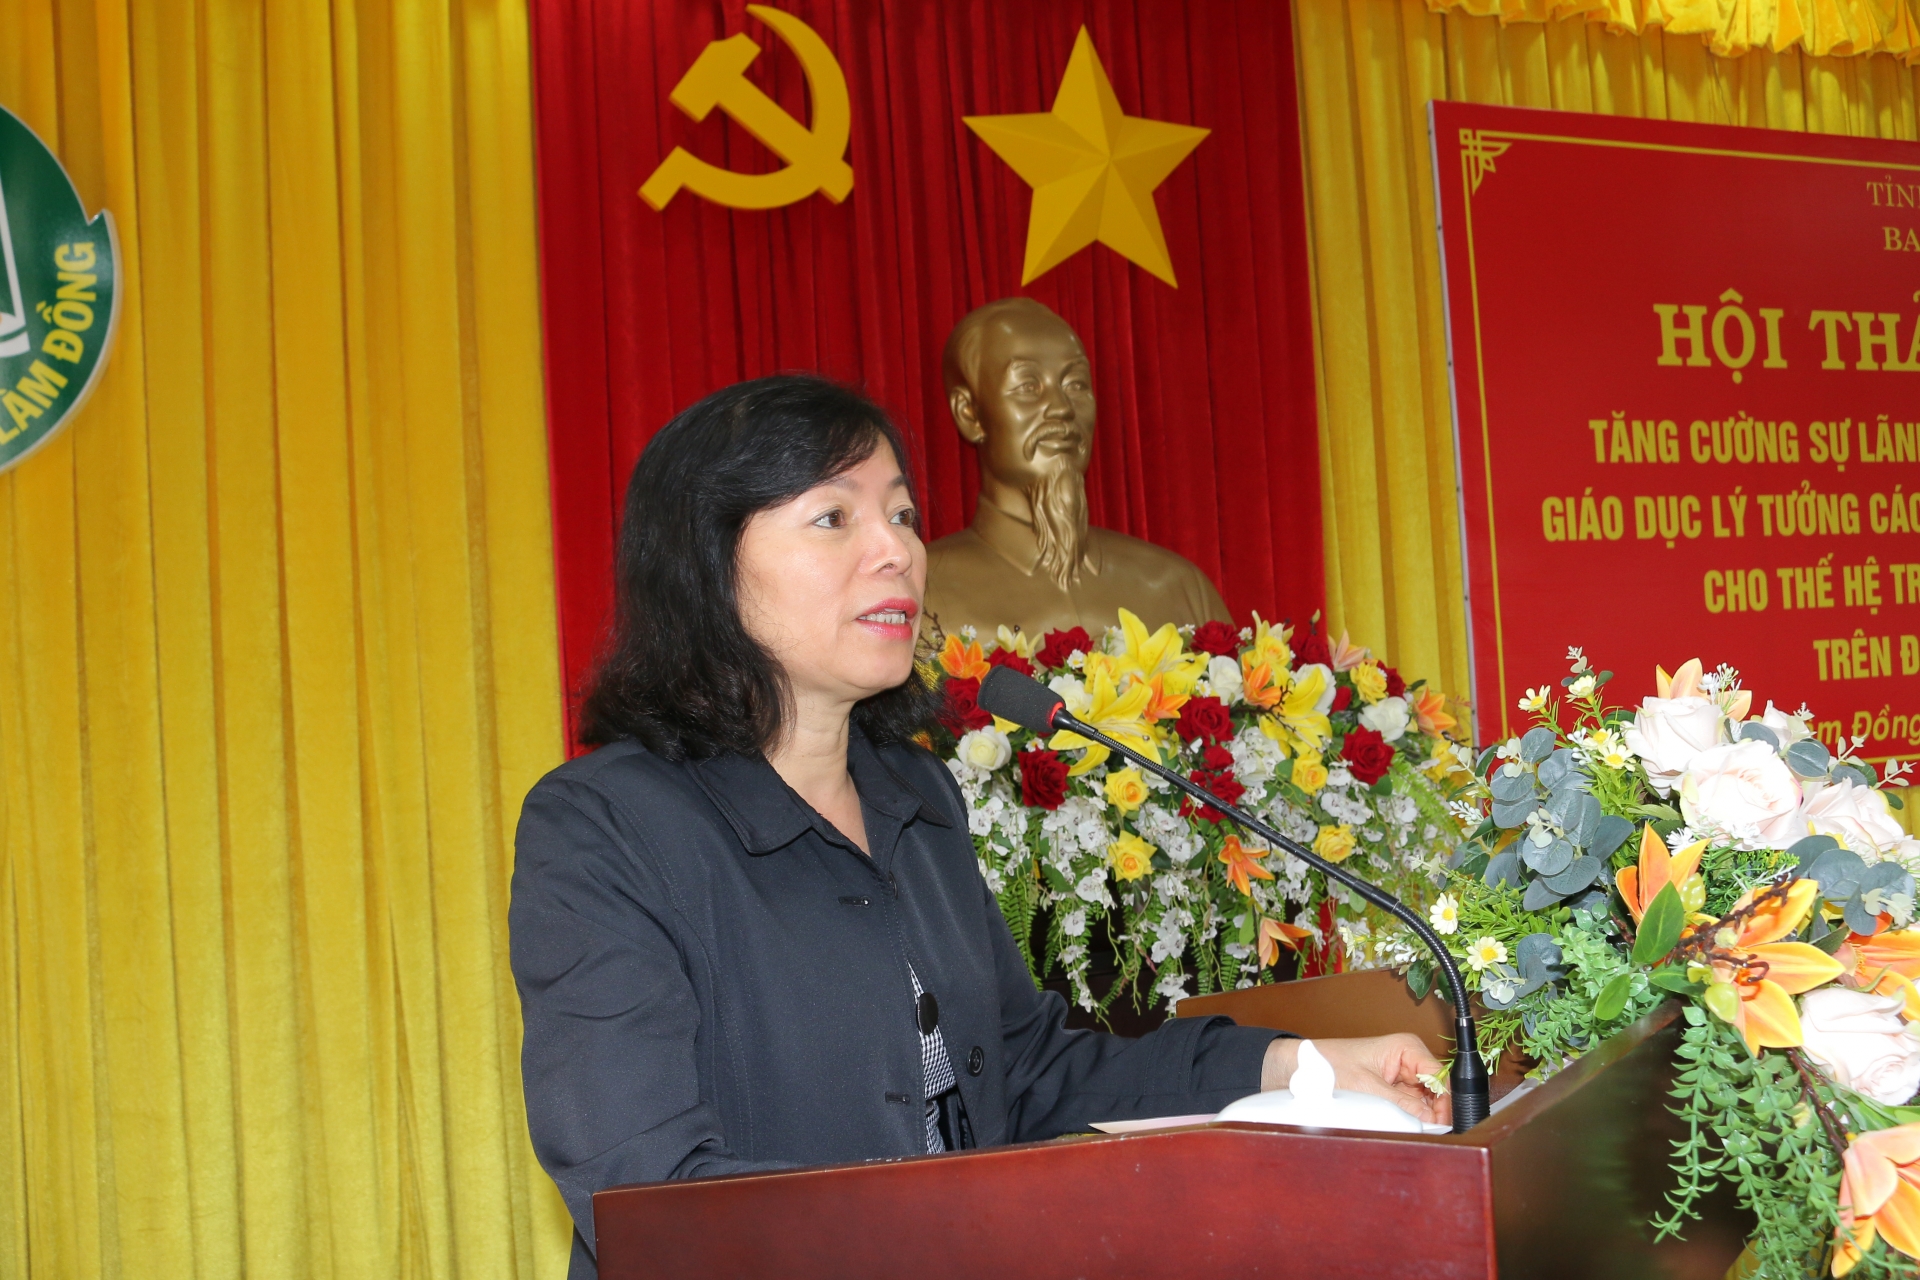 Đồng chí Nguyễn Thị Mỵ - Phó trưởng Ban Tuyên giáo Tỉnh ủy phát biểu đề đẫn hội thảo